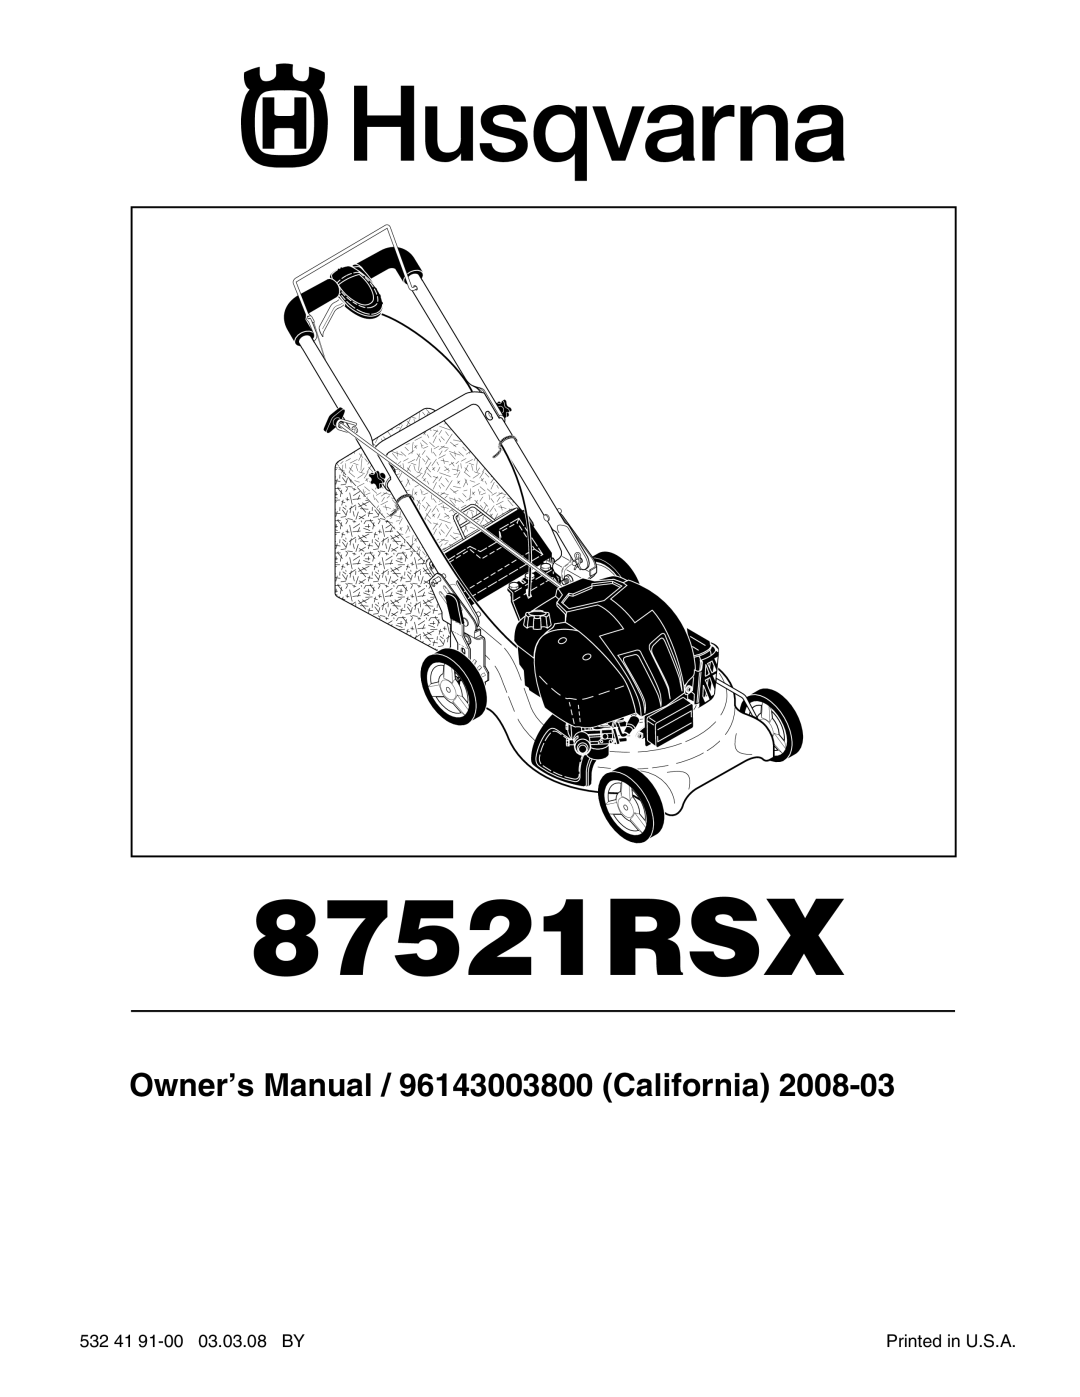 Husqvarna 87521RSX owner manual Owner’s Manual / 96143003800 California 